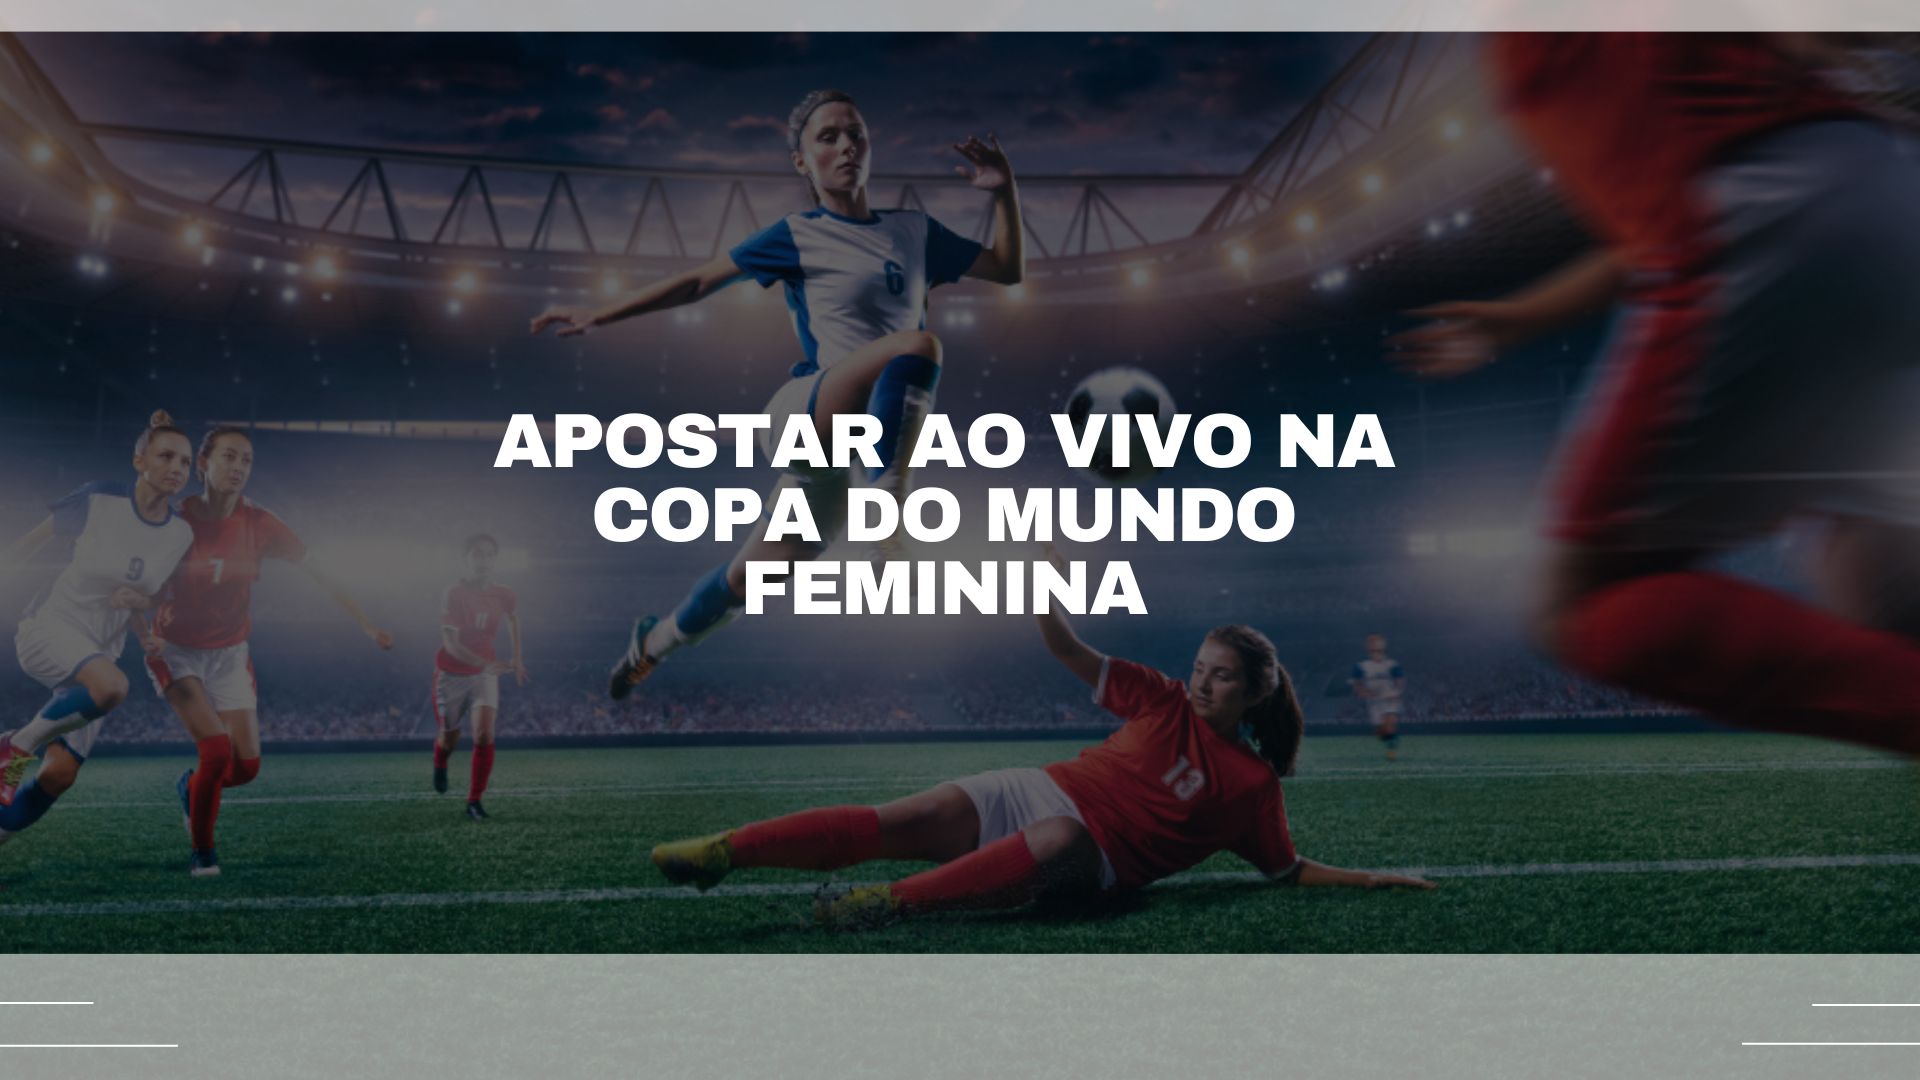 Copa do Mundo de Futebol Feminino 2023 ao vivo, resultados Futebol Mundo 